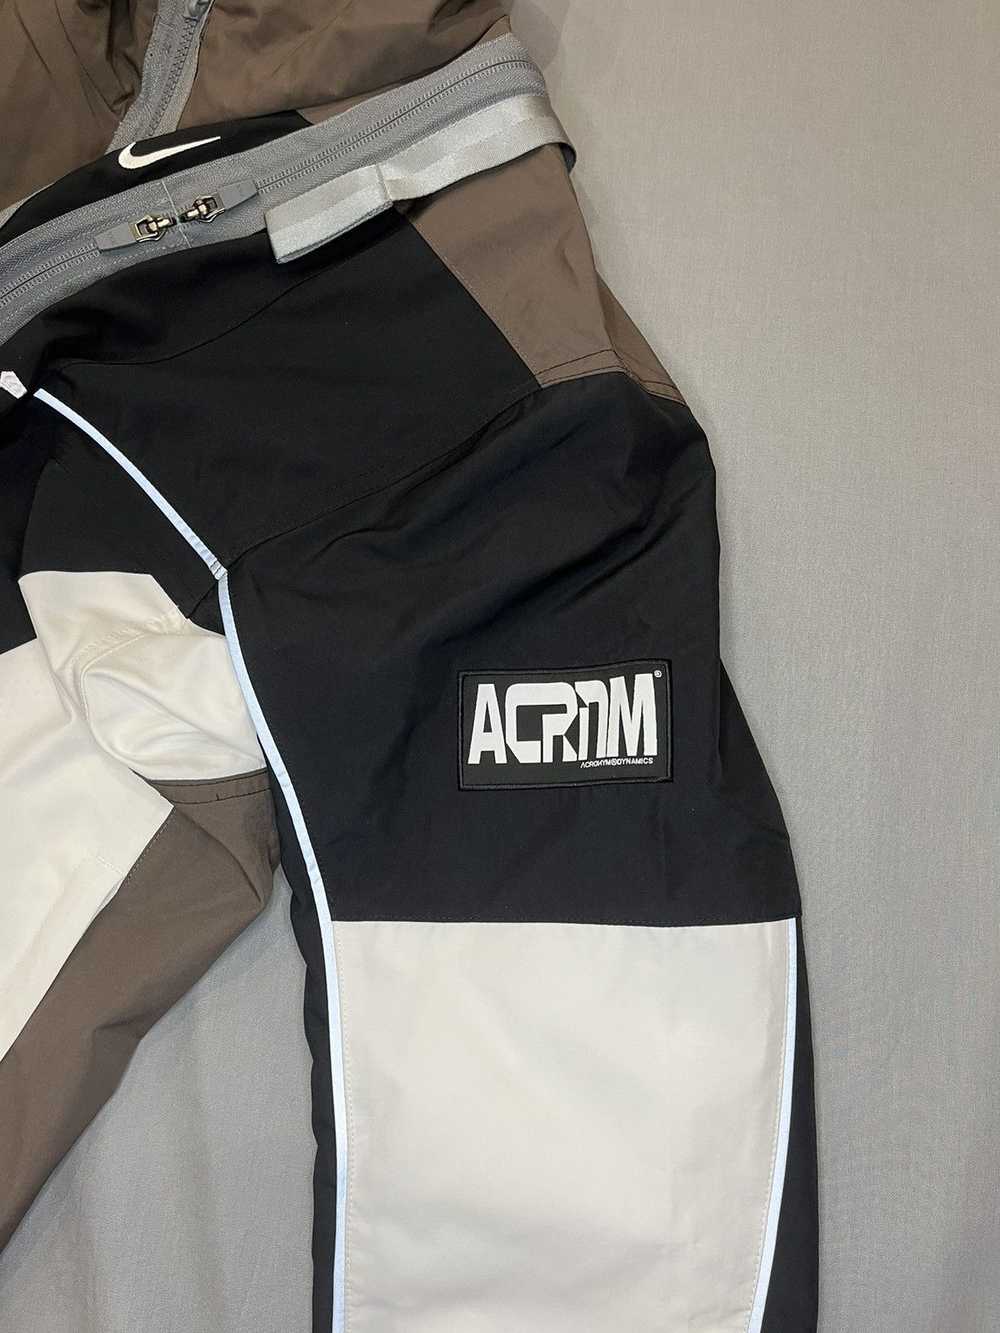 Acronym × Nike Nike x Acronym Woven Jacket - image 3